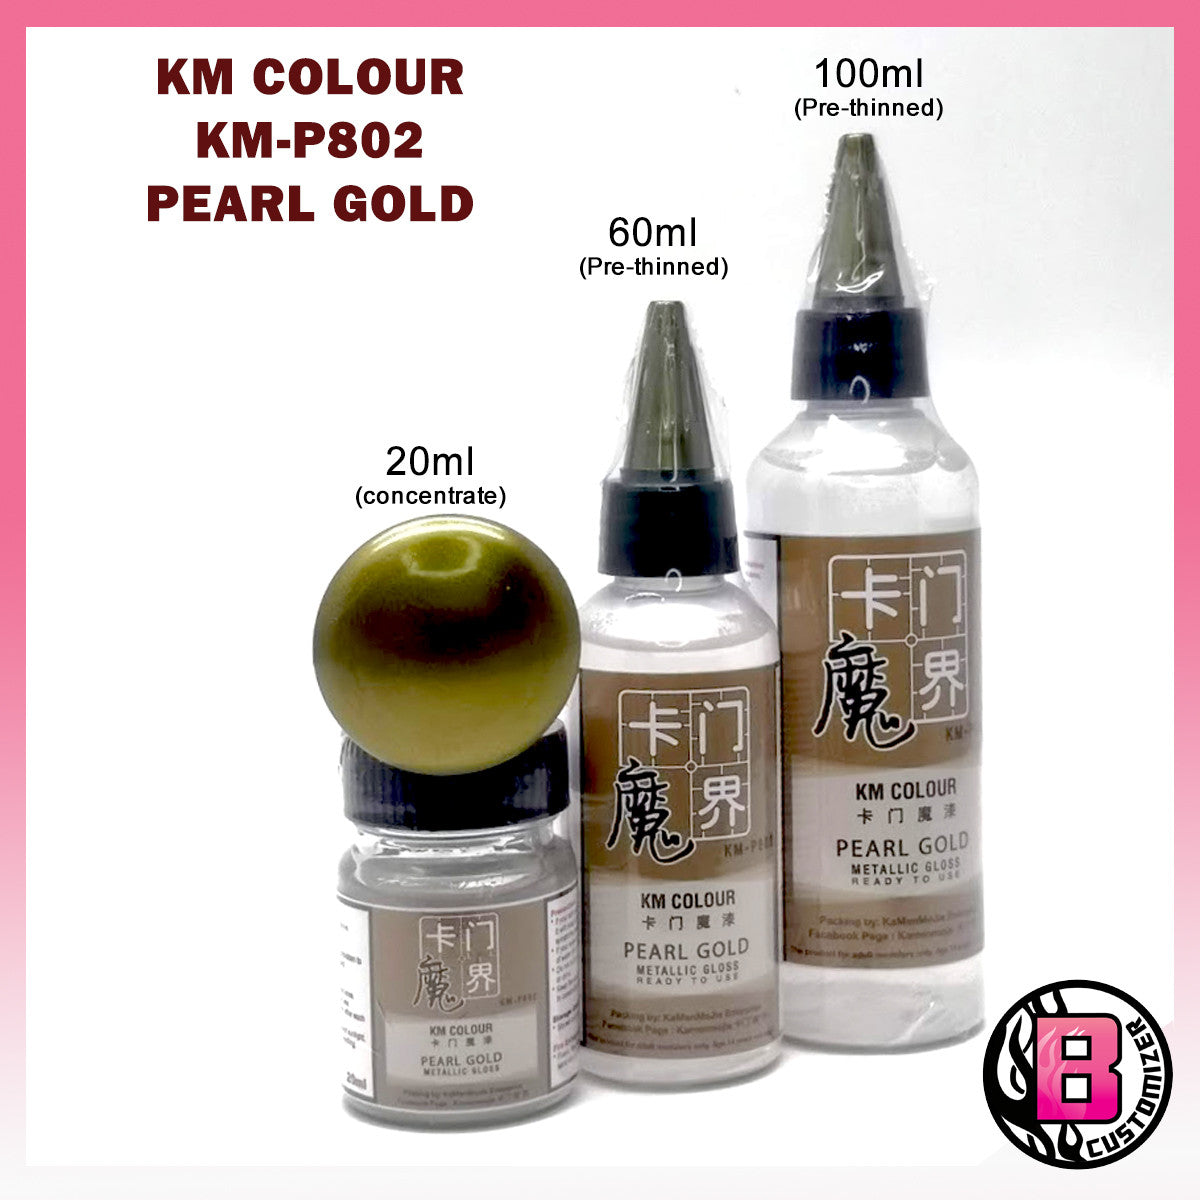 KM Colour Pearl Gold (KM-P802)